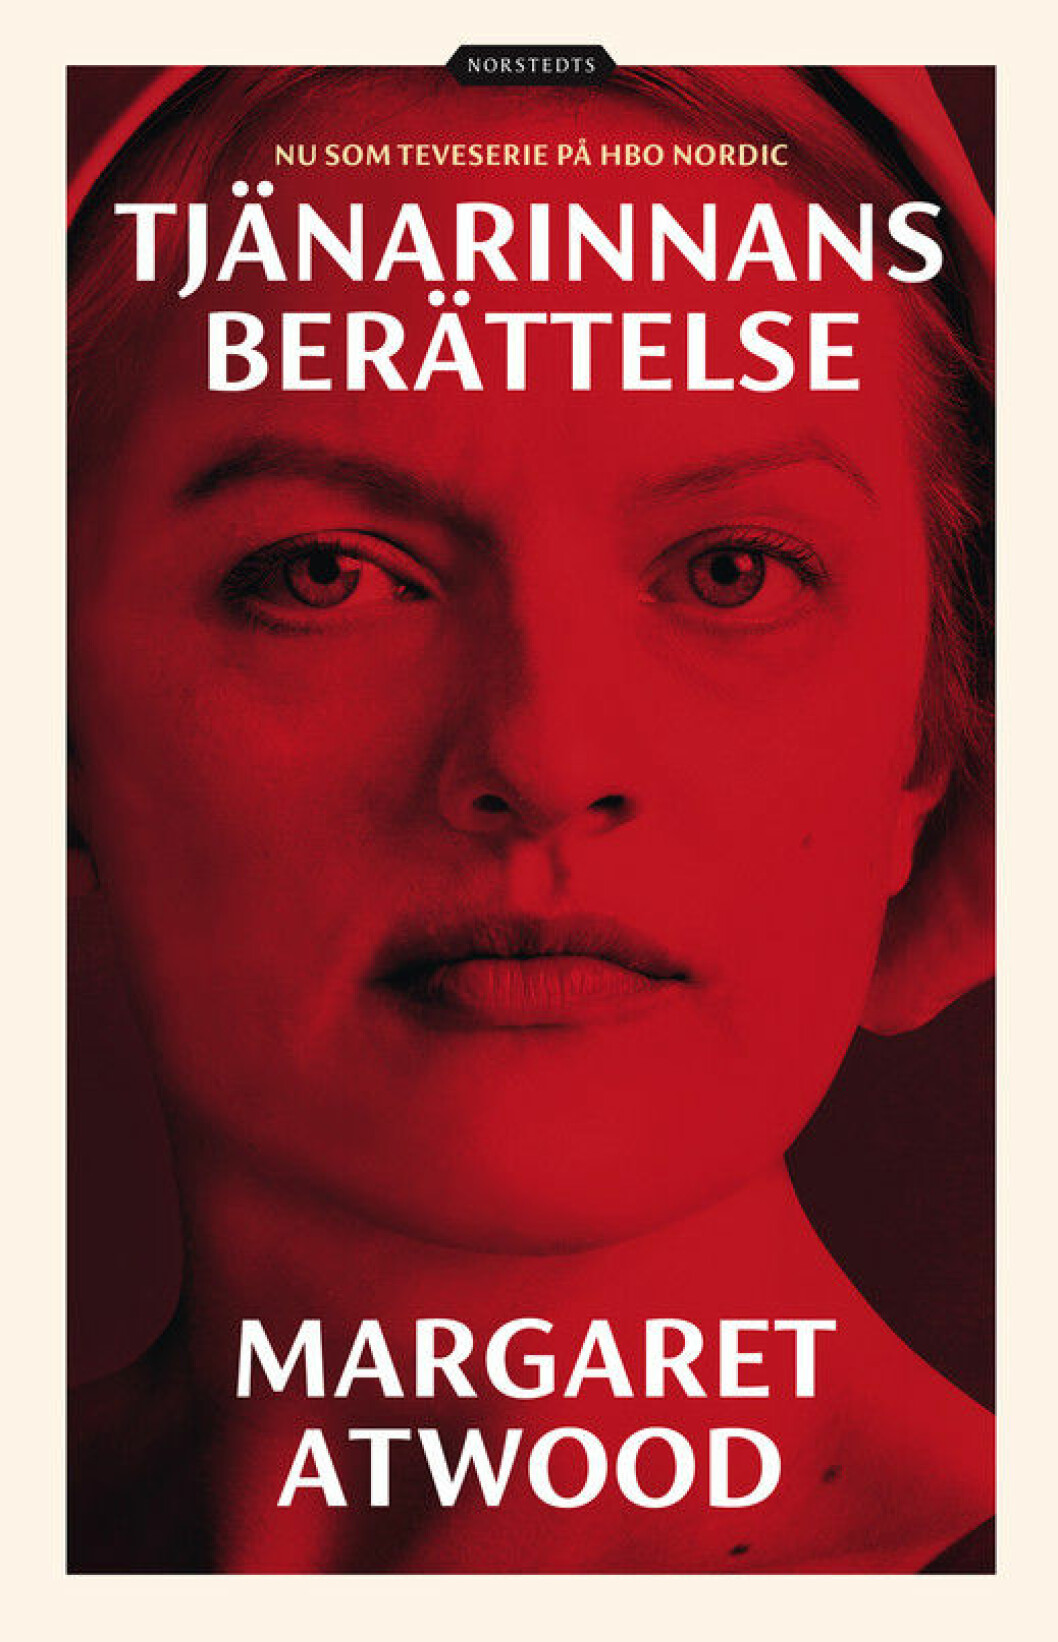 Tjänarinnans berättelse, en dystopisk bok av Margaret Atwood.